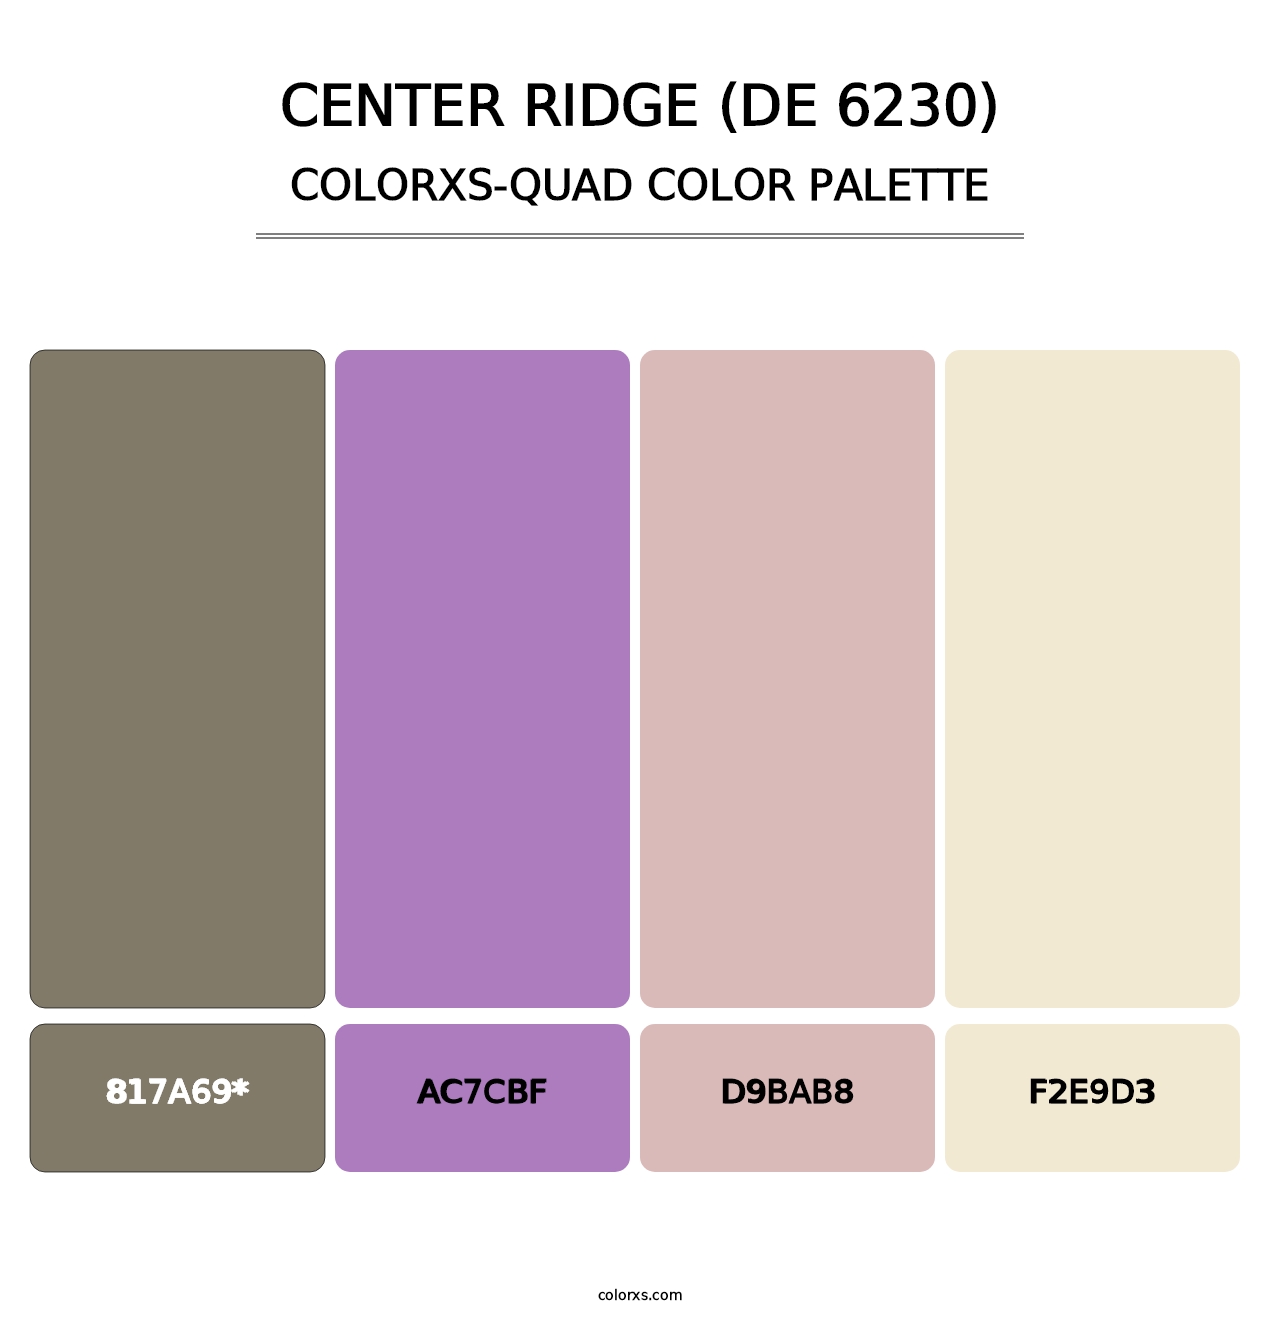 Center Ridge (DE 6230) - Colorxs Quad Palette